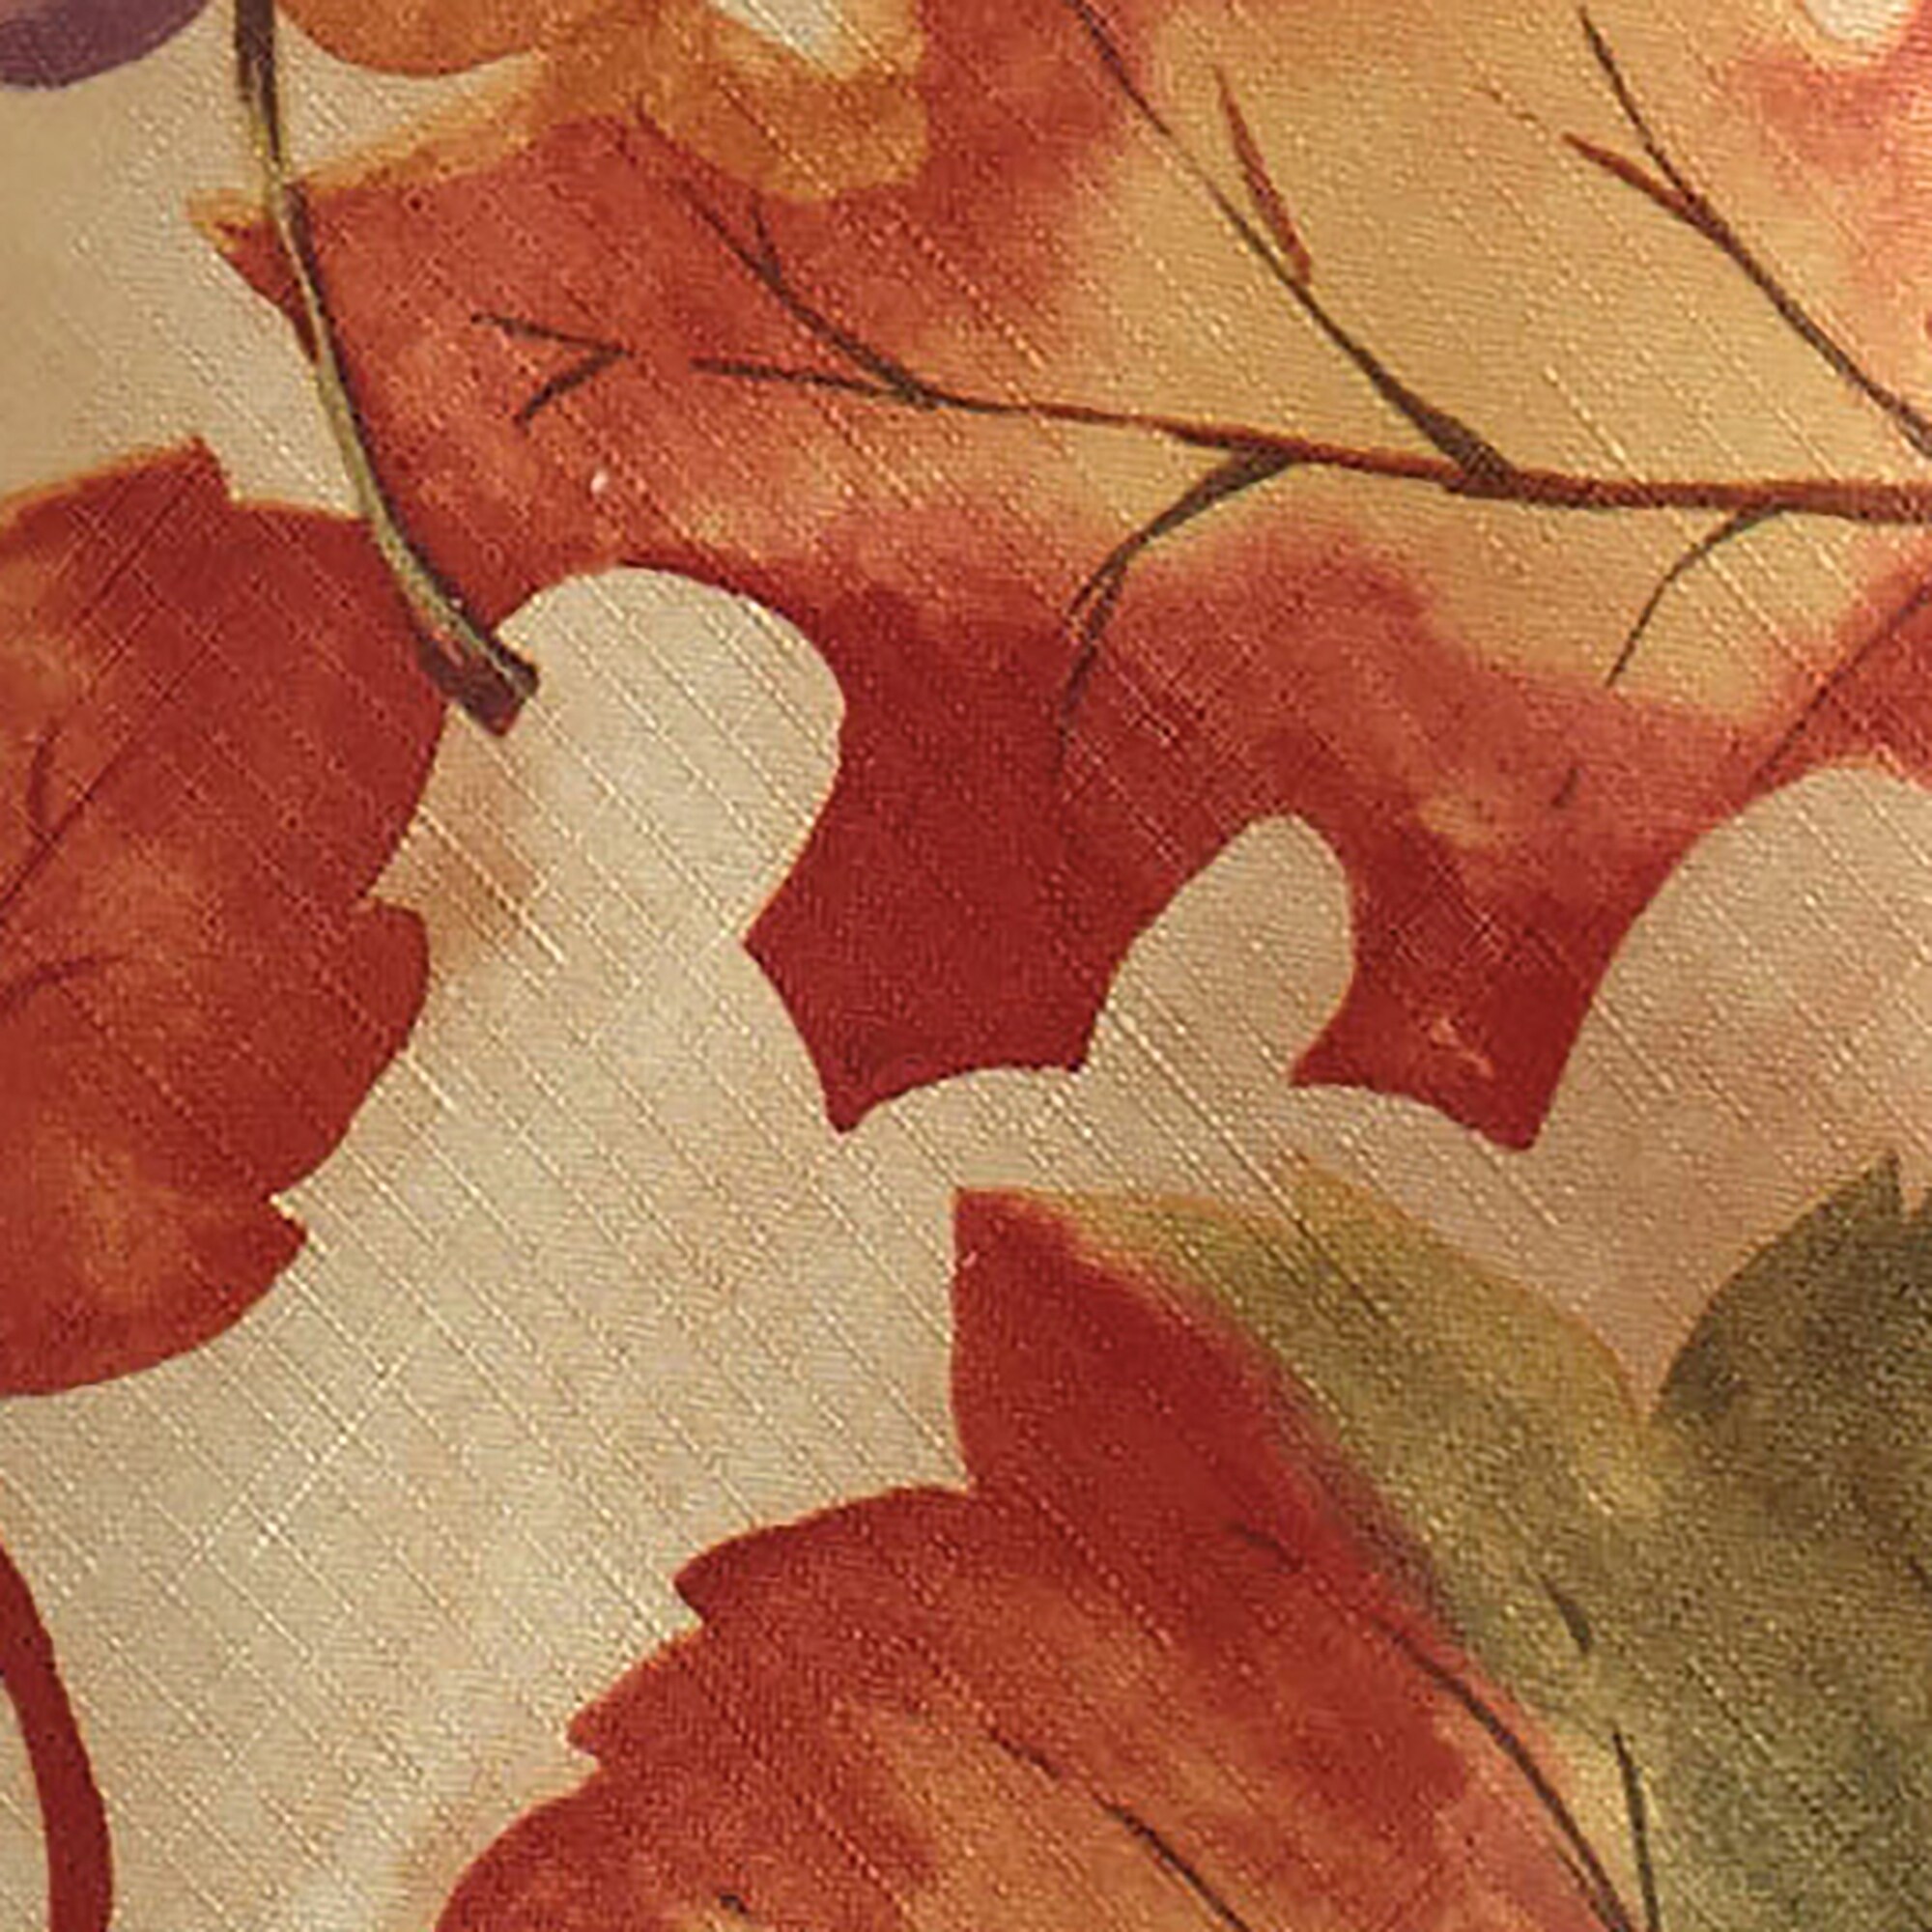 Elrene Autumn Leaves Fall Printed Napkins, Set of 8 - Multi